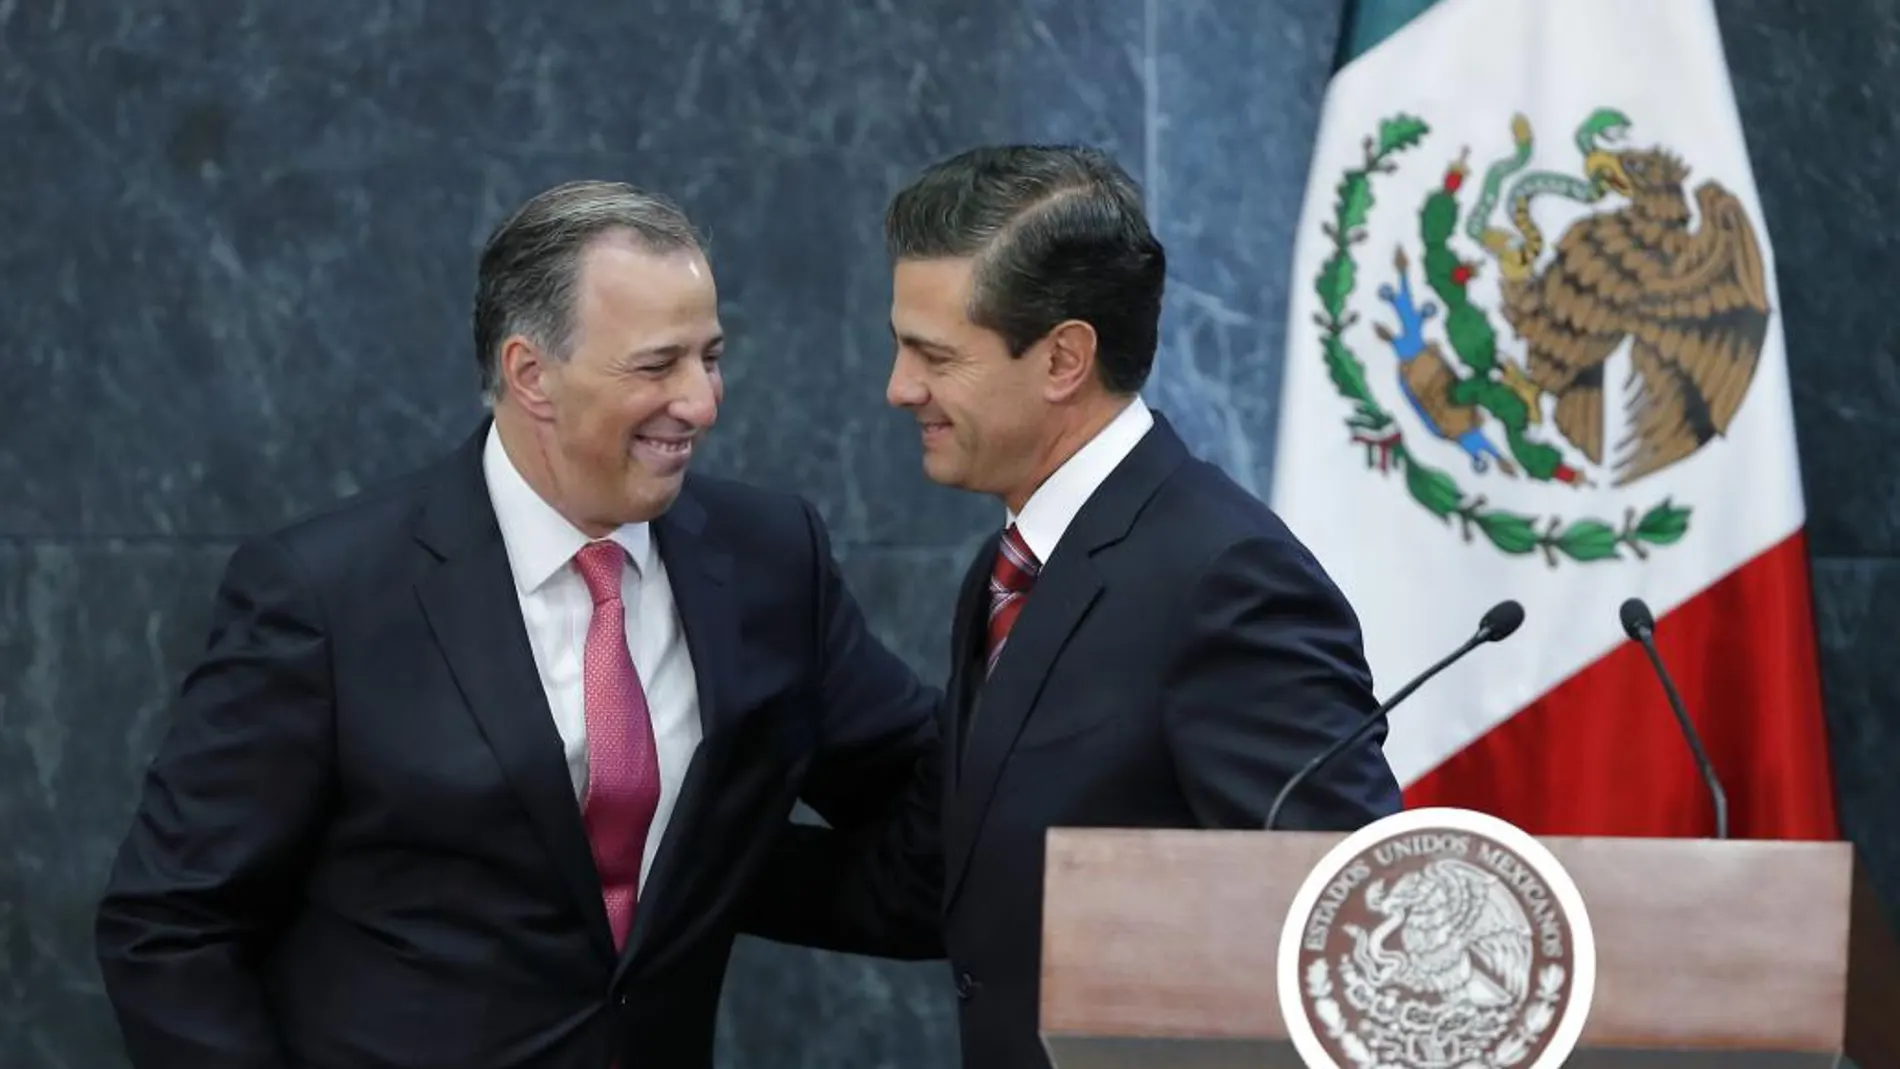 El presidente de México, Enrique Peña Nieto saluda a José Antonio Meade